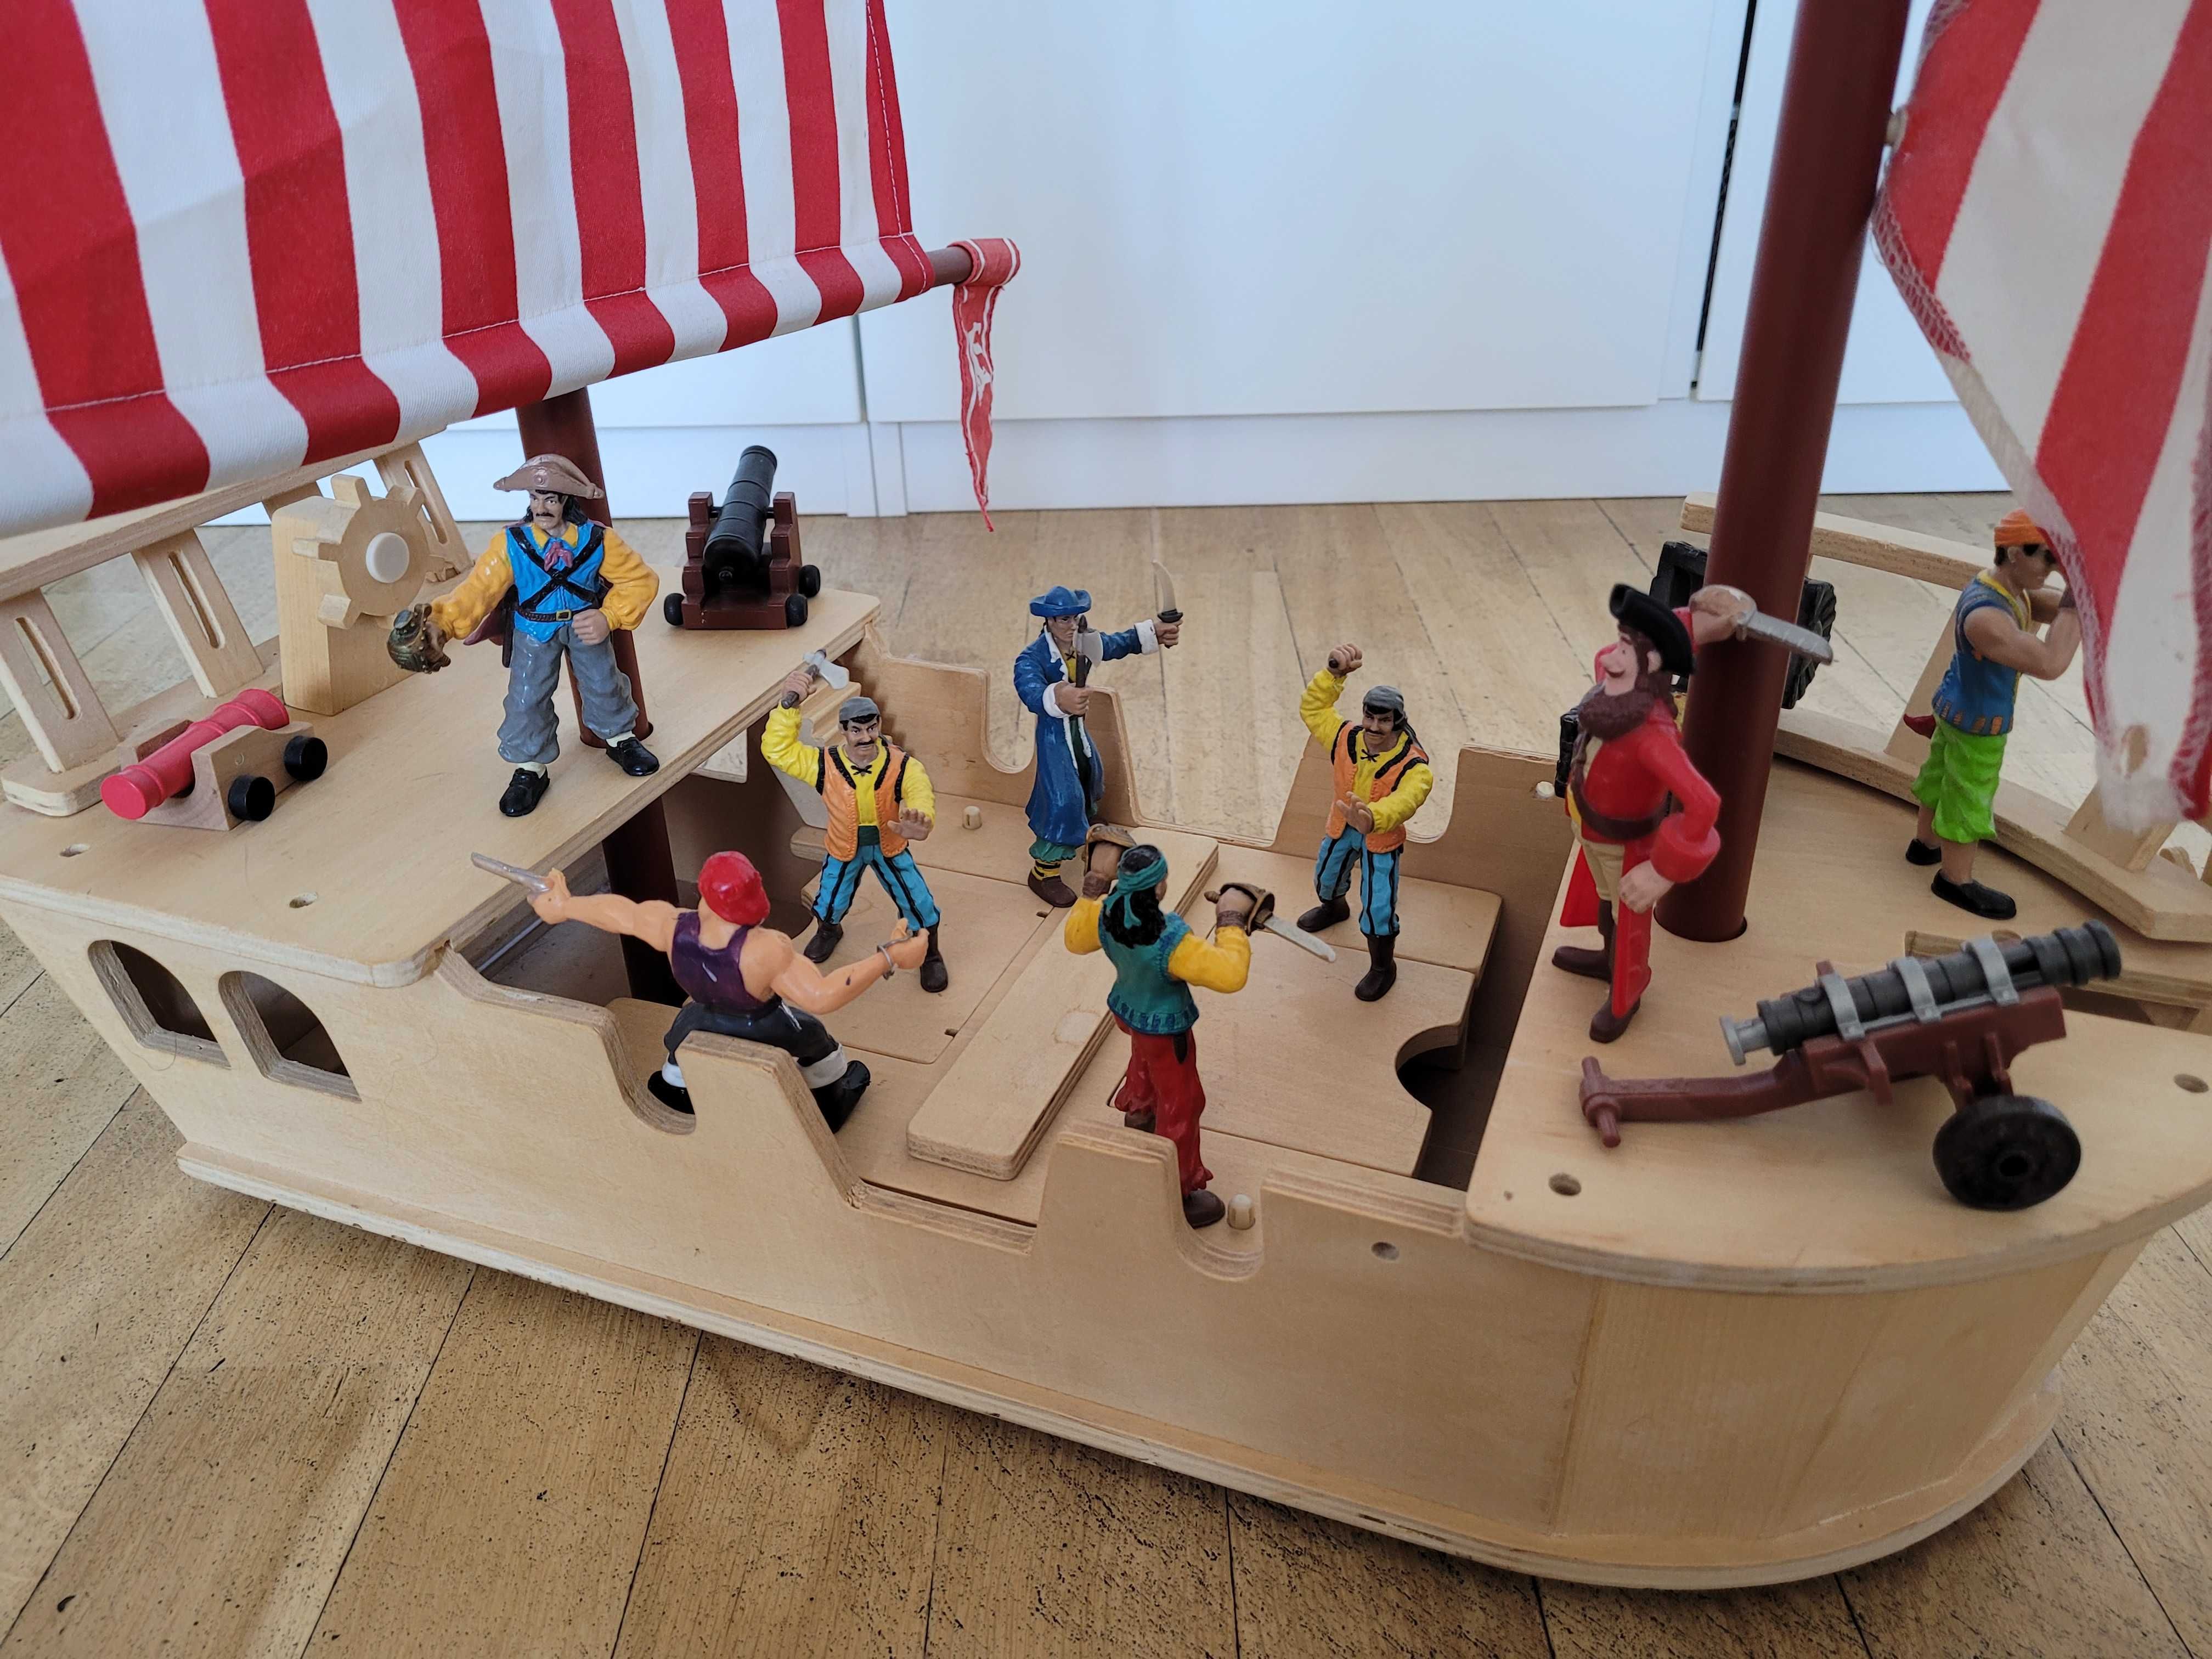 Drewniany statek piracki z figurkami piratow, brakujące elementy